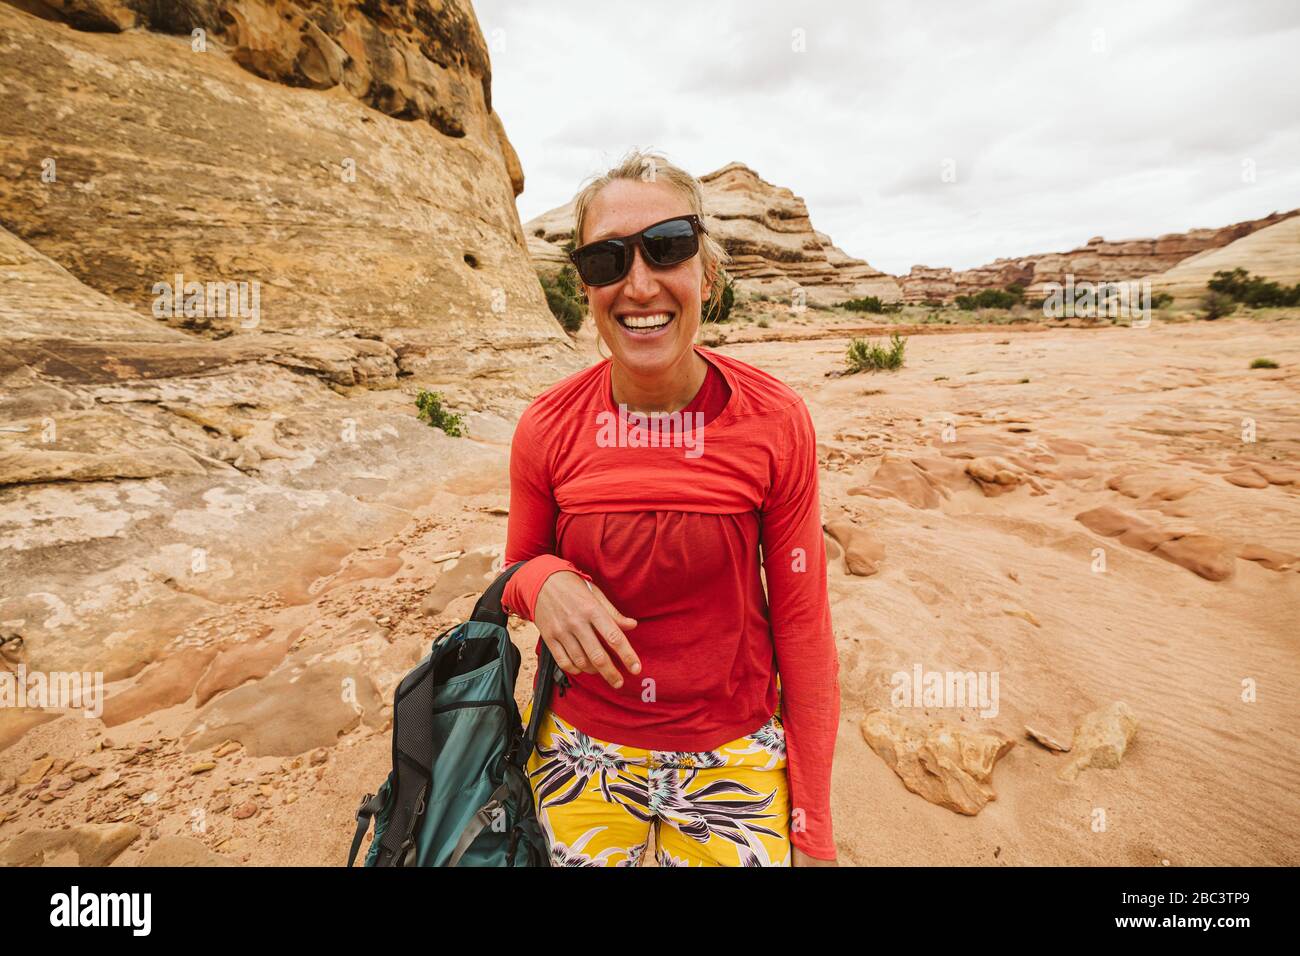 escursione nel deserto con occhiali da sole inclinati e camicia risata Foto Stock